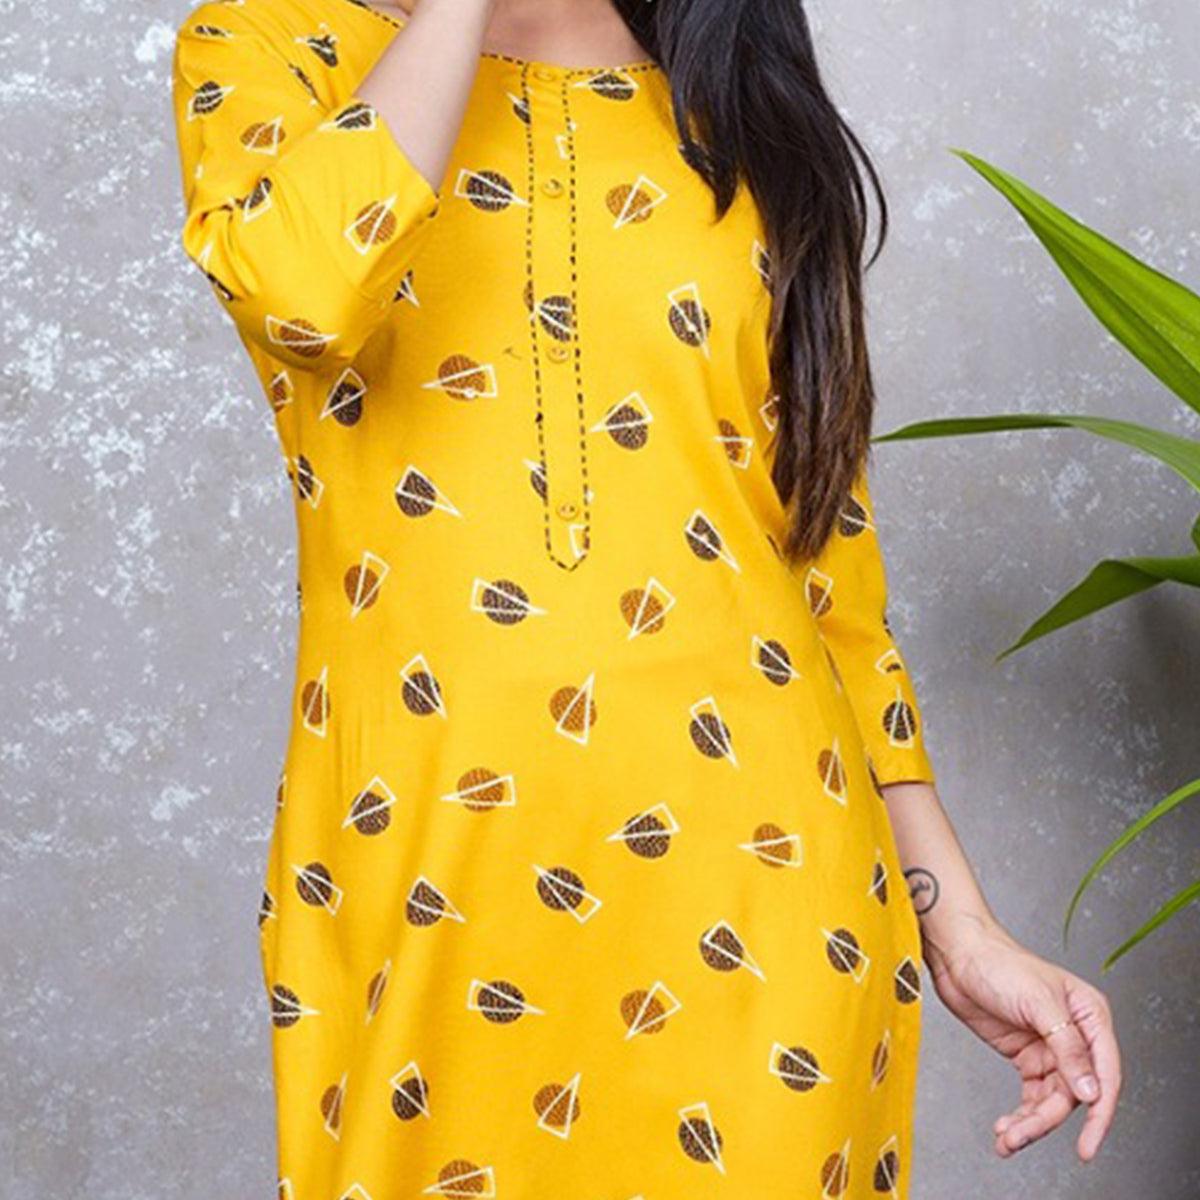 Aariya Designs - Yellow Colored Casual Wear Geometric Printed Rayon Kurti - Peachmode